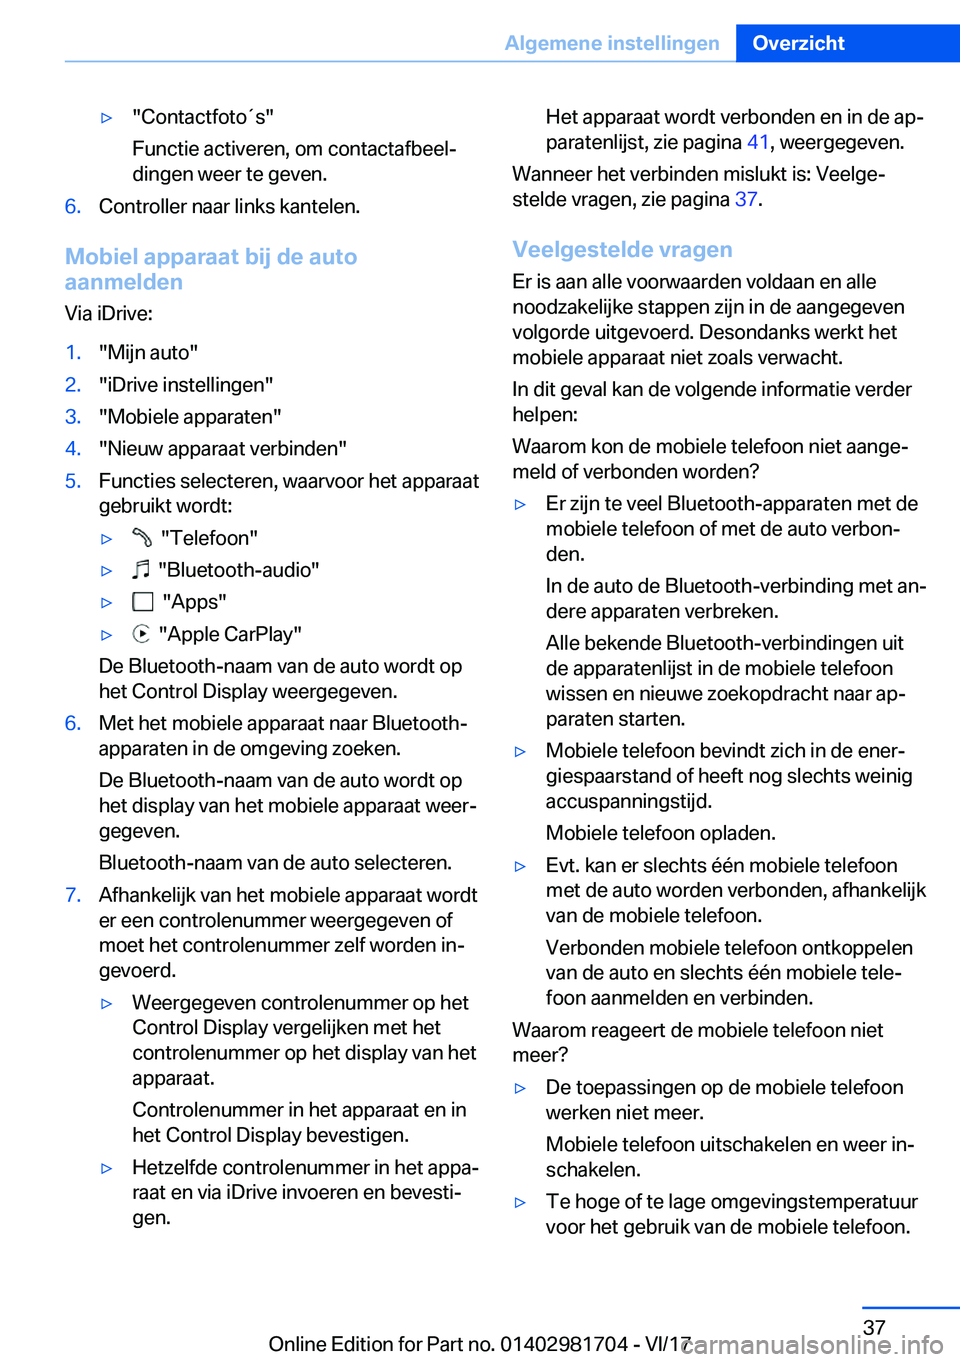 BMW M4 2018  Instructieboekjes (in Dutch) 'y�"�C�o�n�t�a�c�t�f�o�t�o�t�s�"
�F�u�n�c�t�i�e� �a�c�t�i�v�e�r�e�n�,� �o�m� �c�o�n�t�a�c�t�a�f�b�e�e�lj �d�i�n�g�e�n� �w�e�e�r� �t�e� �g�e�v�e�n�.�6�.�C�o�n�t�r�o�l�l�e�r� �n�a�a�r� �l�i